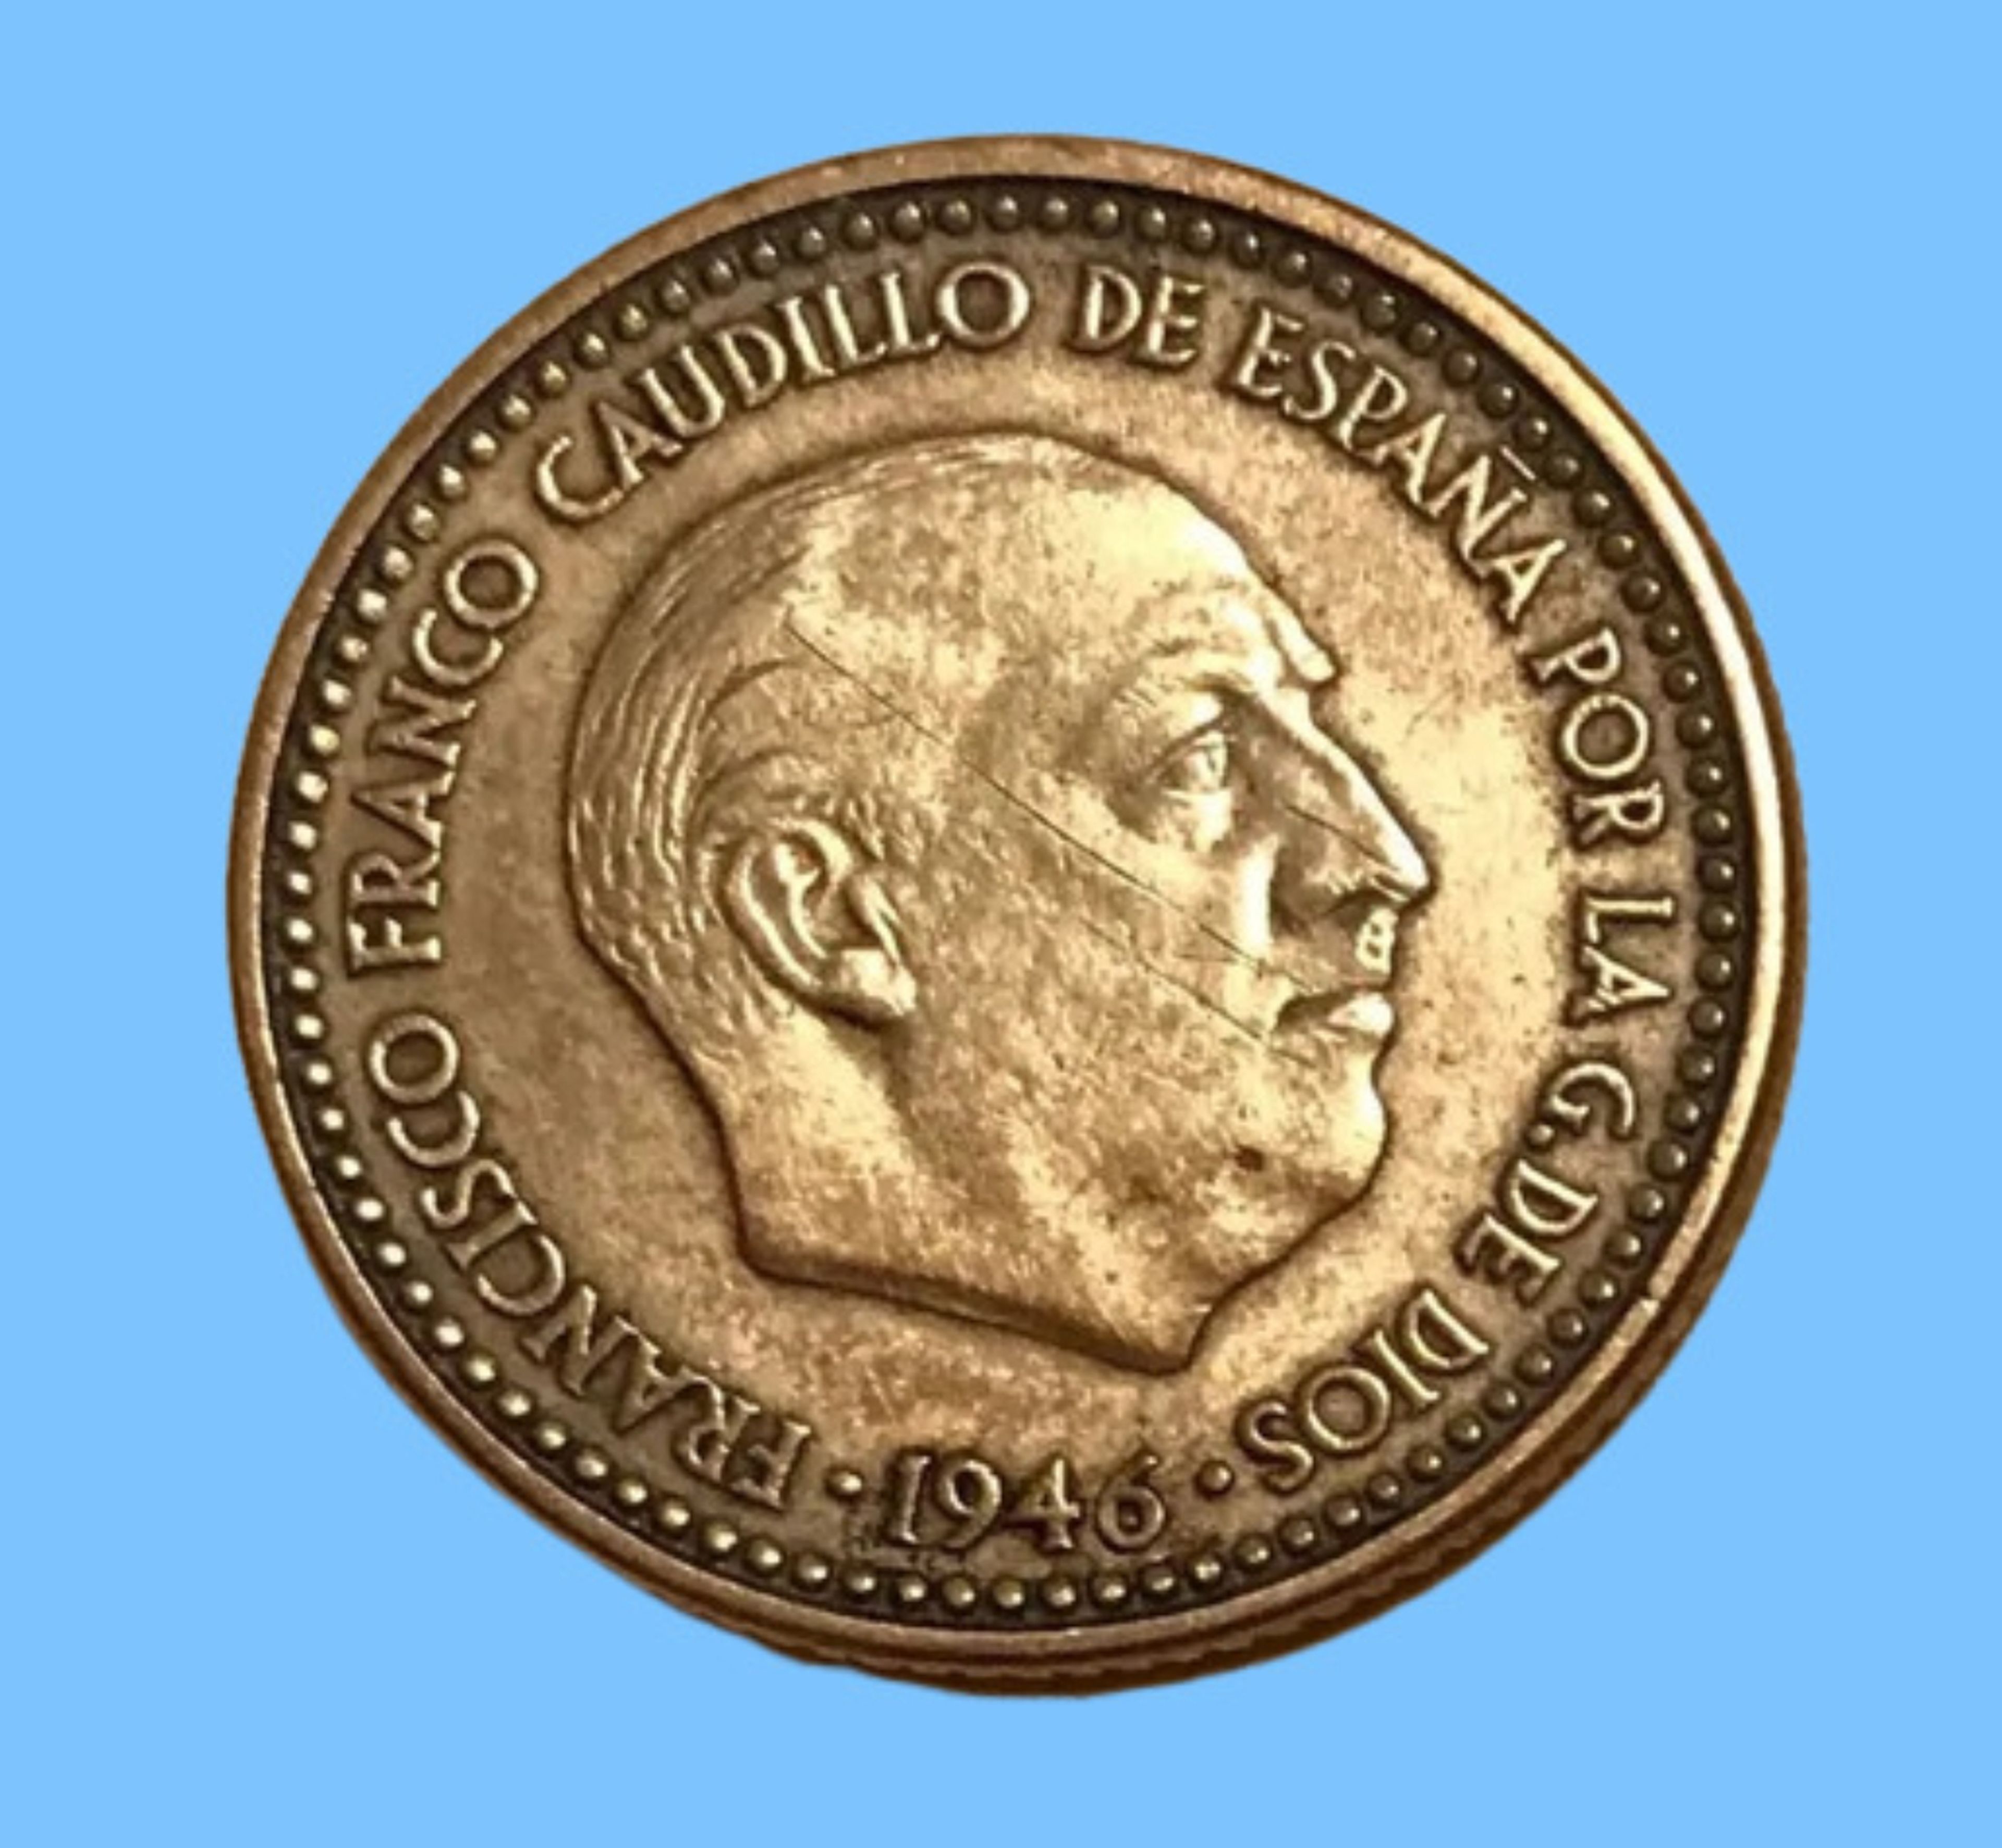 1 peseta de 1946